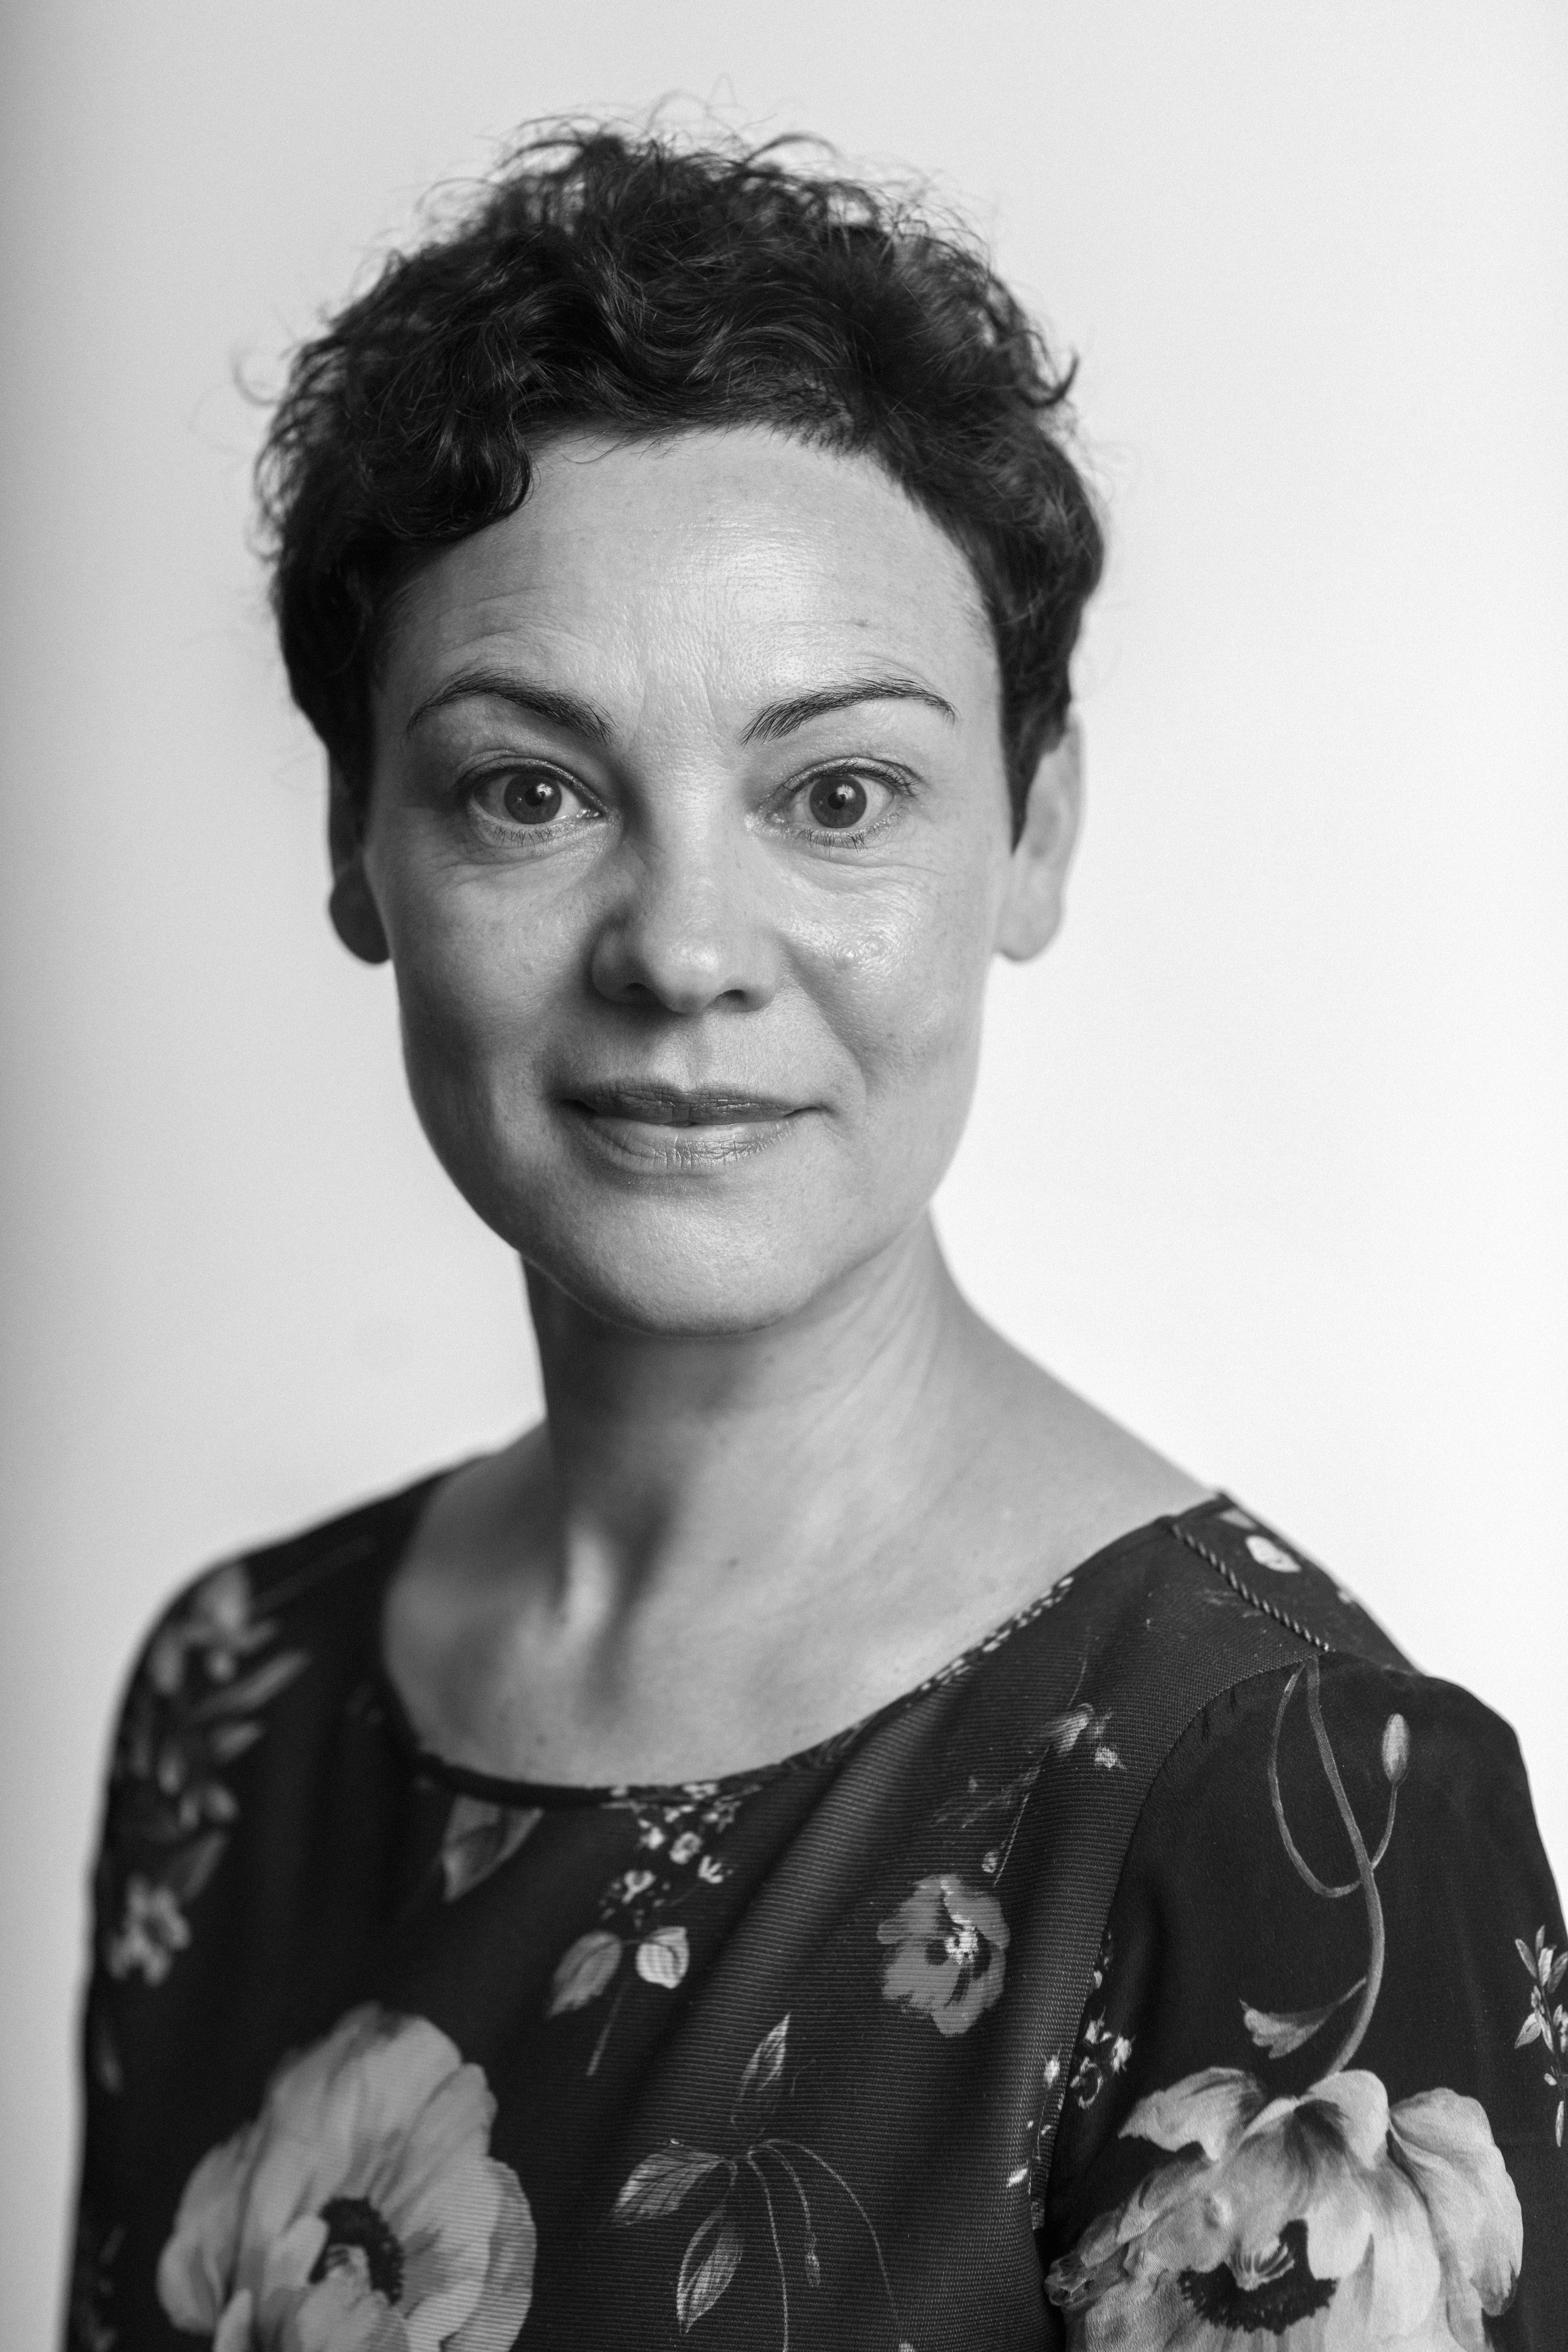 Portræt af Anne Bunimowicz i sort/hvid 2021